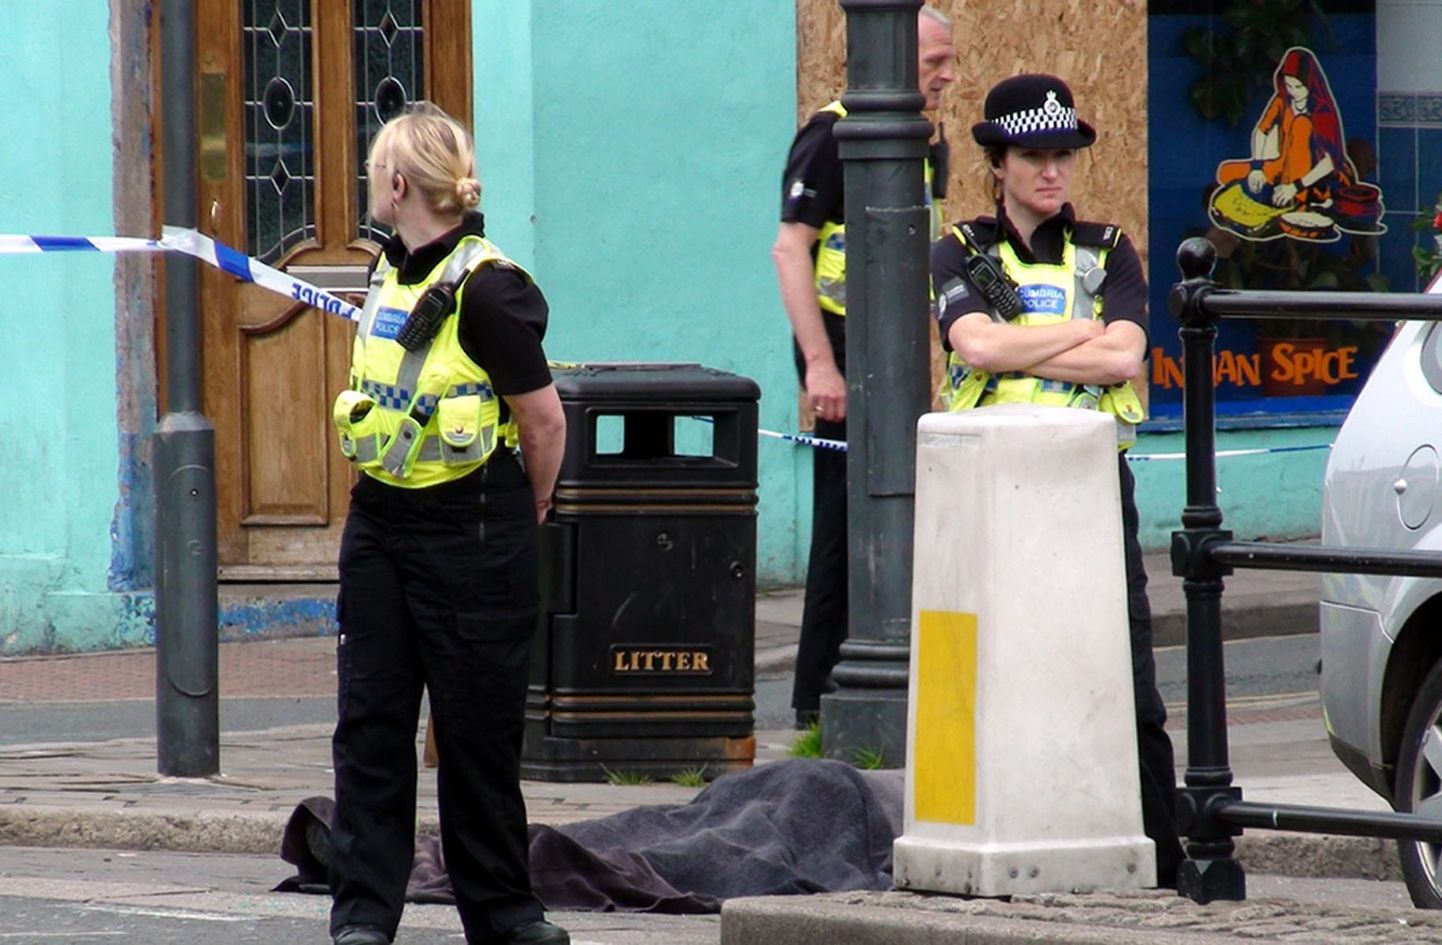 Briti politseinikud Whitehavenis 
Duke Streetil tulistamisohvri surnukeha juures.